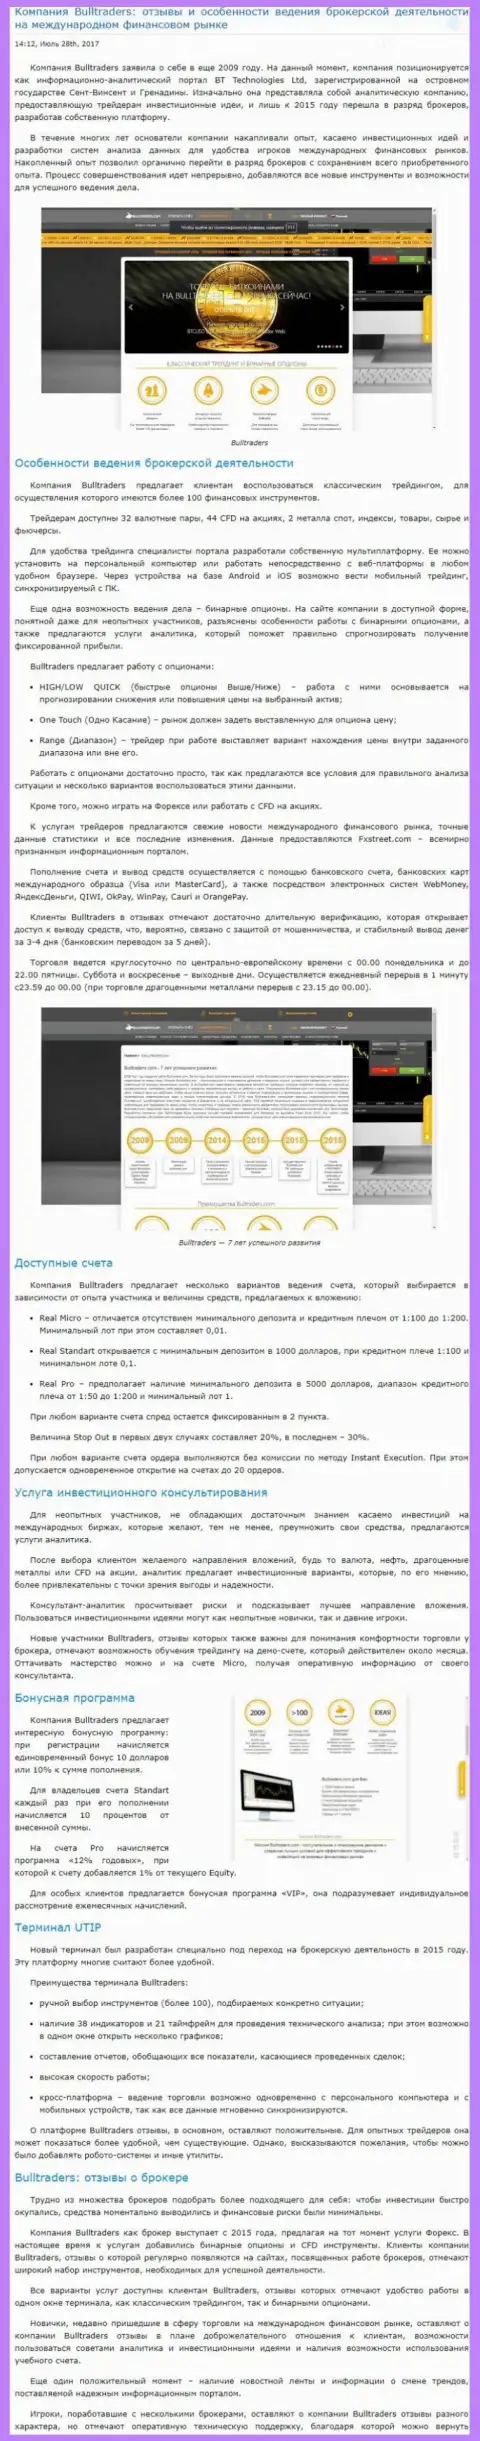 Рассмотрение методов ведения торгов forex брокера Bull Traders на внебиржевом рынке Forex на web-сайте Besuccess Ru